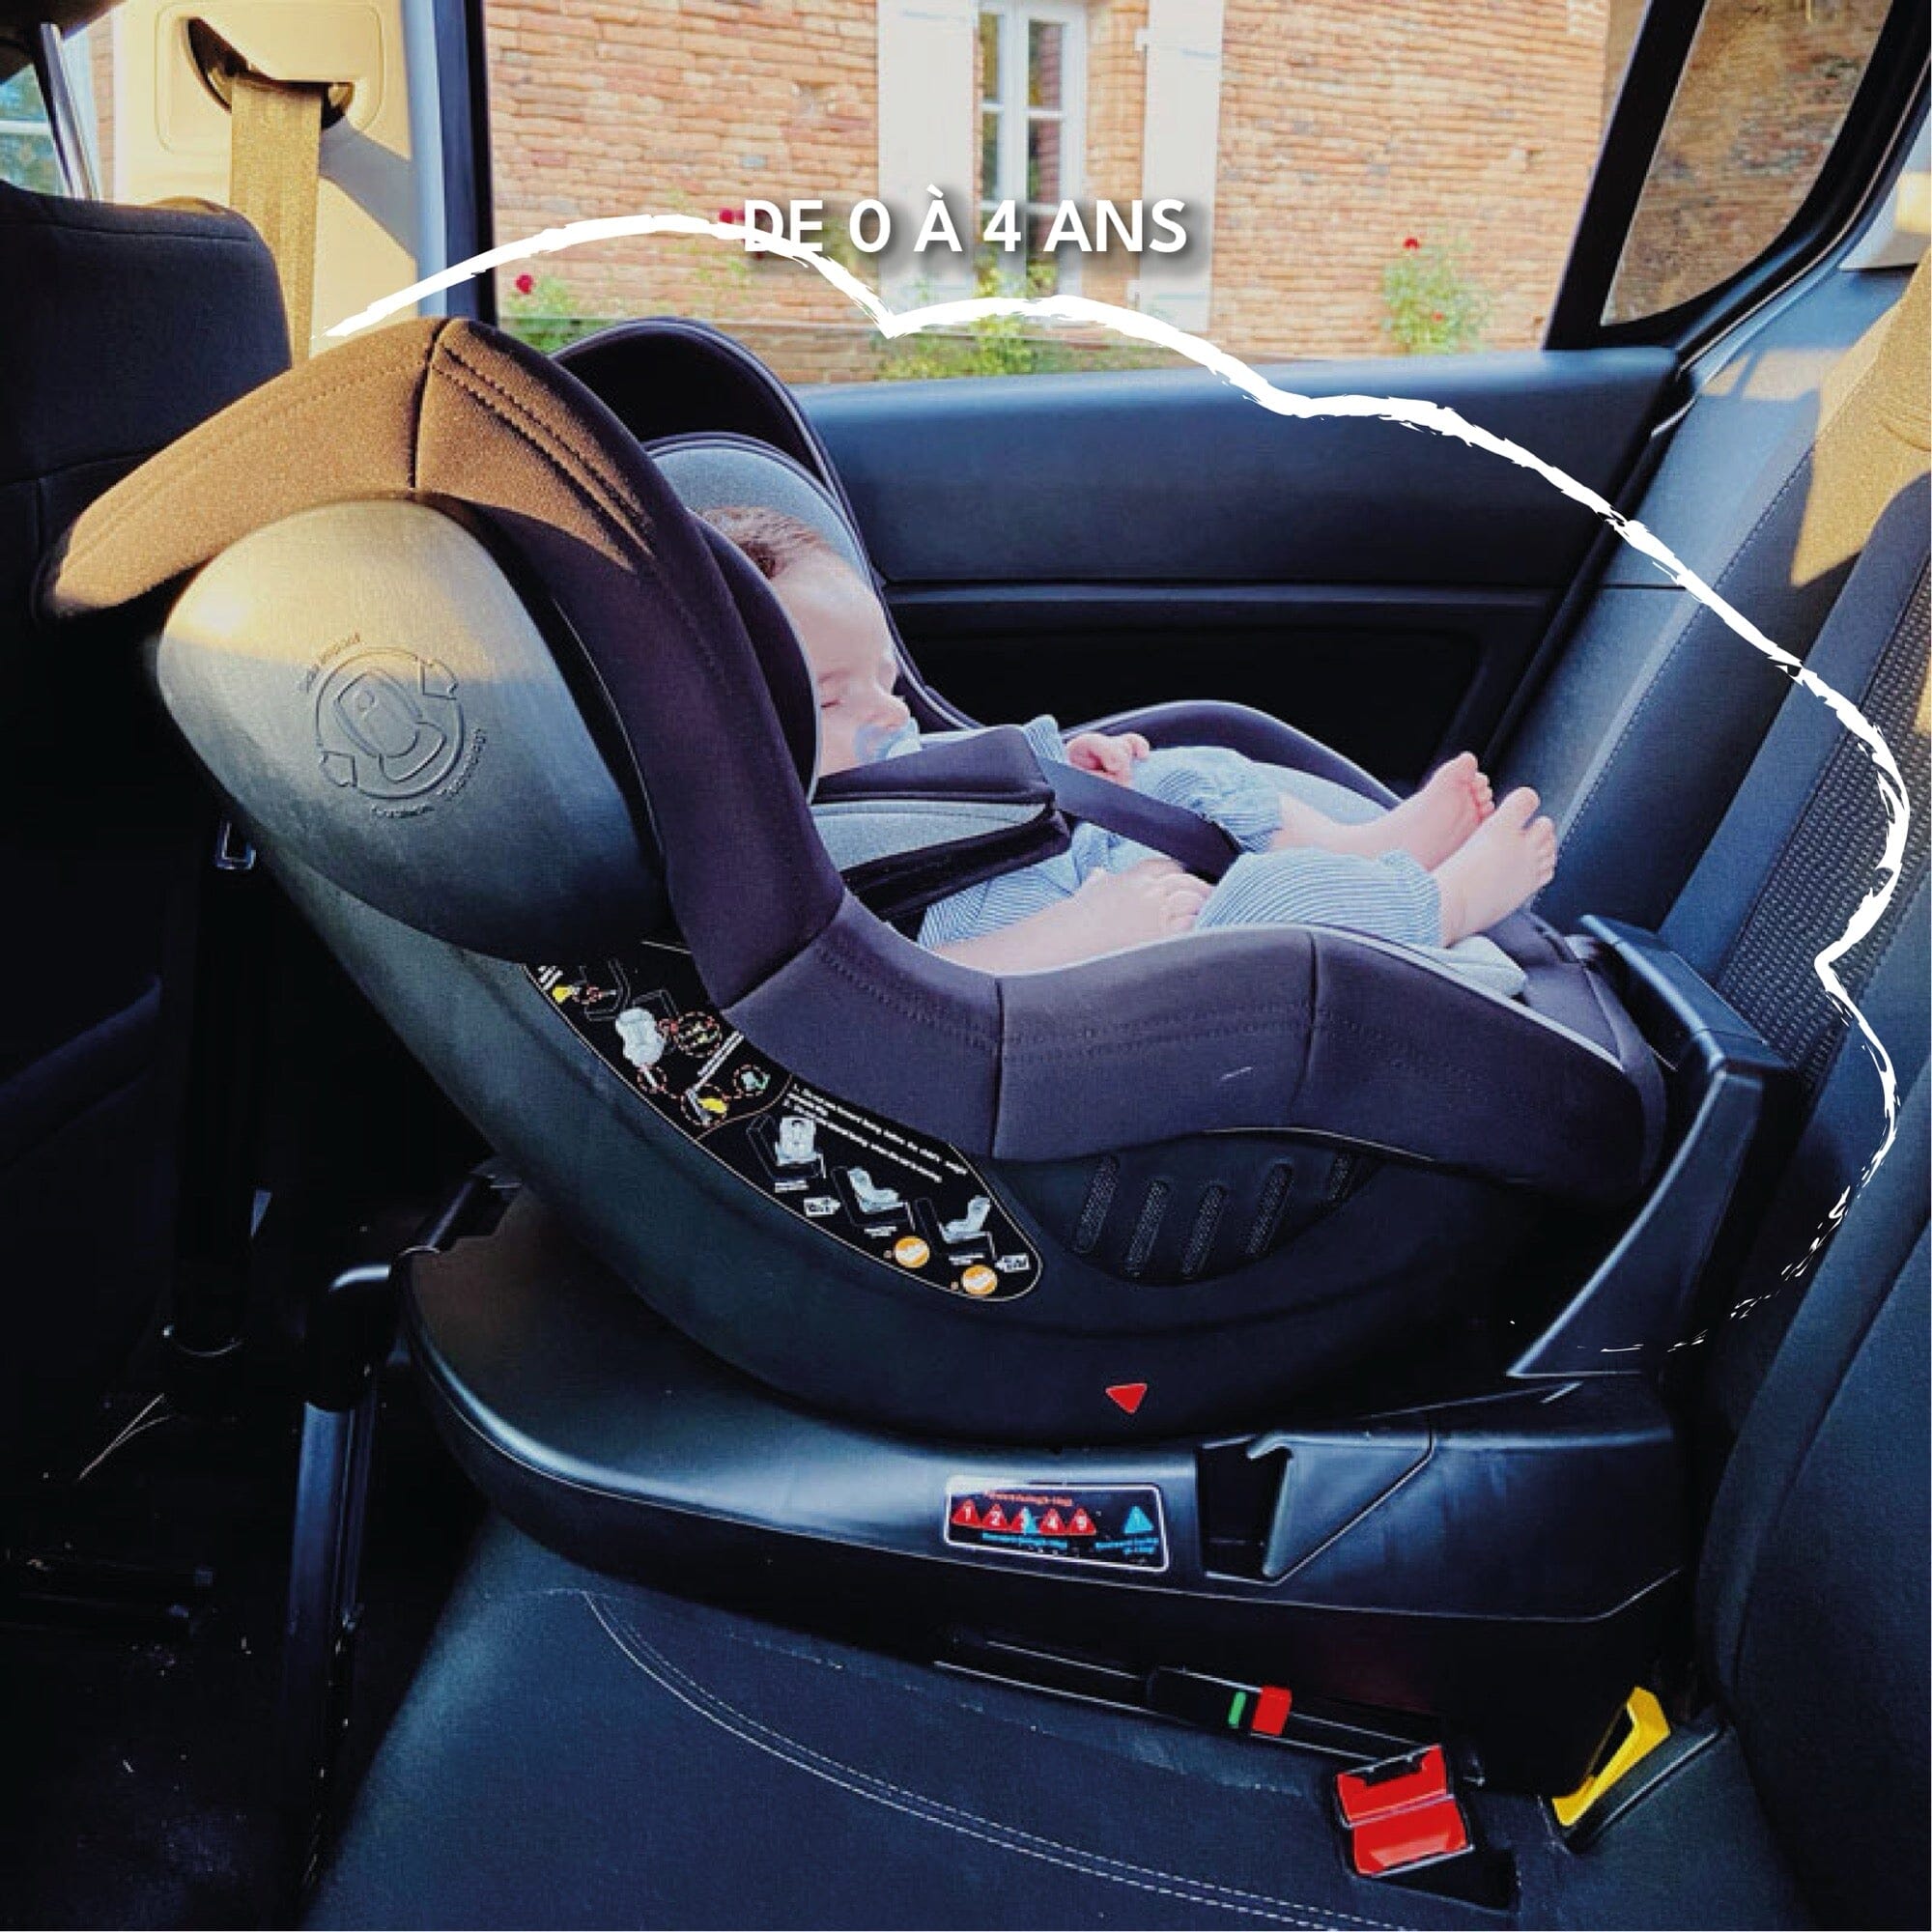 Choisir un Siège Auto : Isofix ou ceinture de sécurité